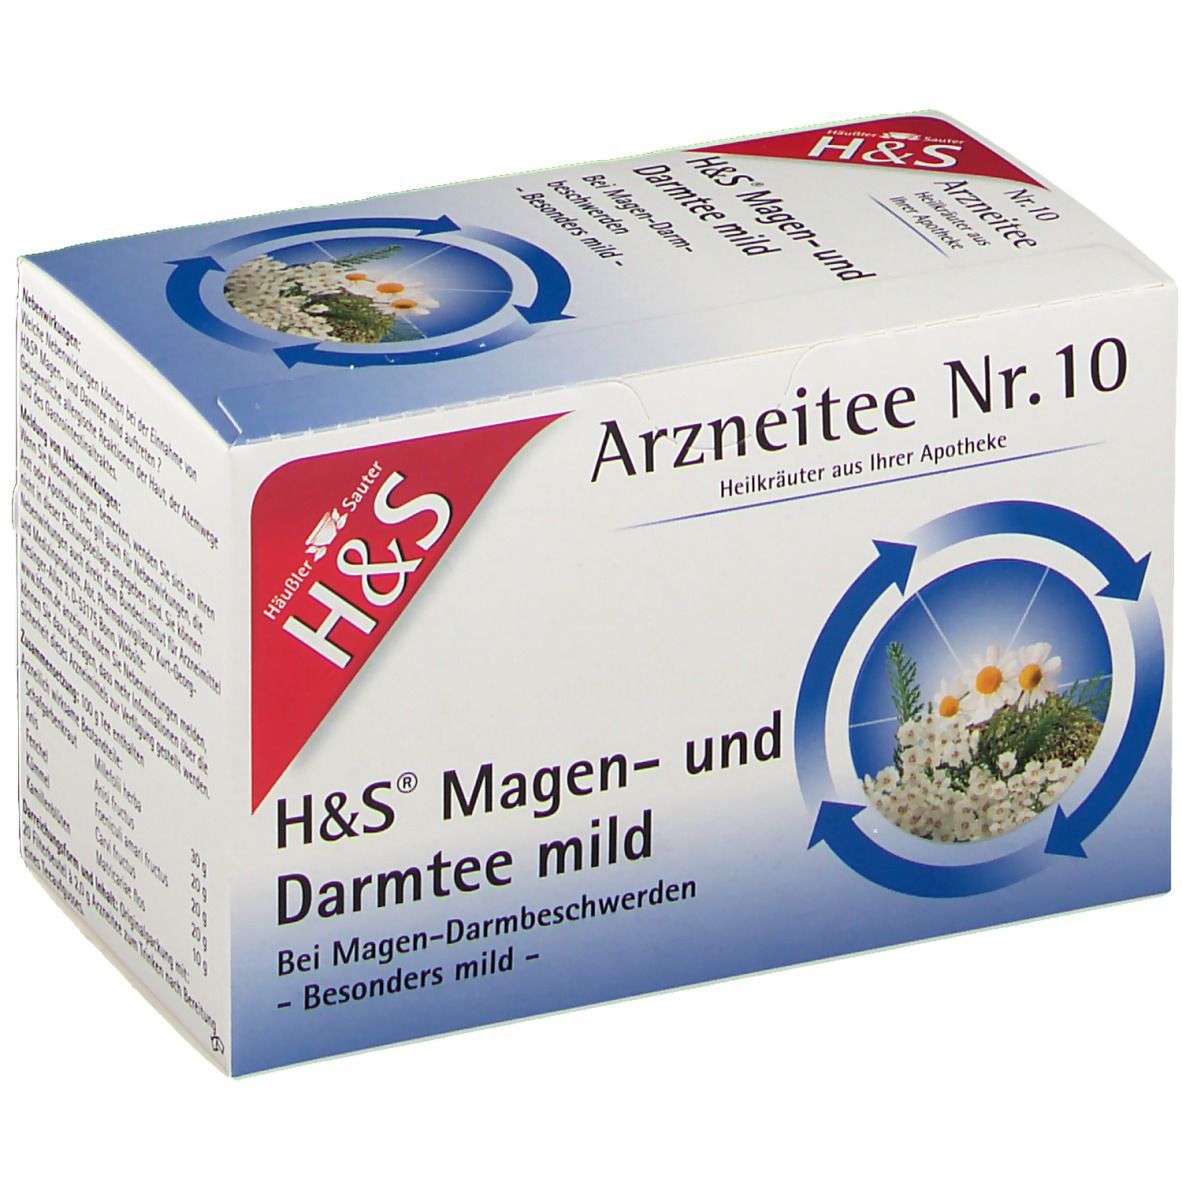 H&S Magen- und Darmtee mild Nr. 10